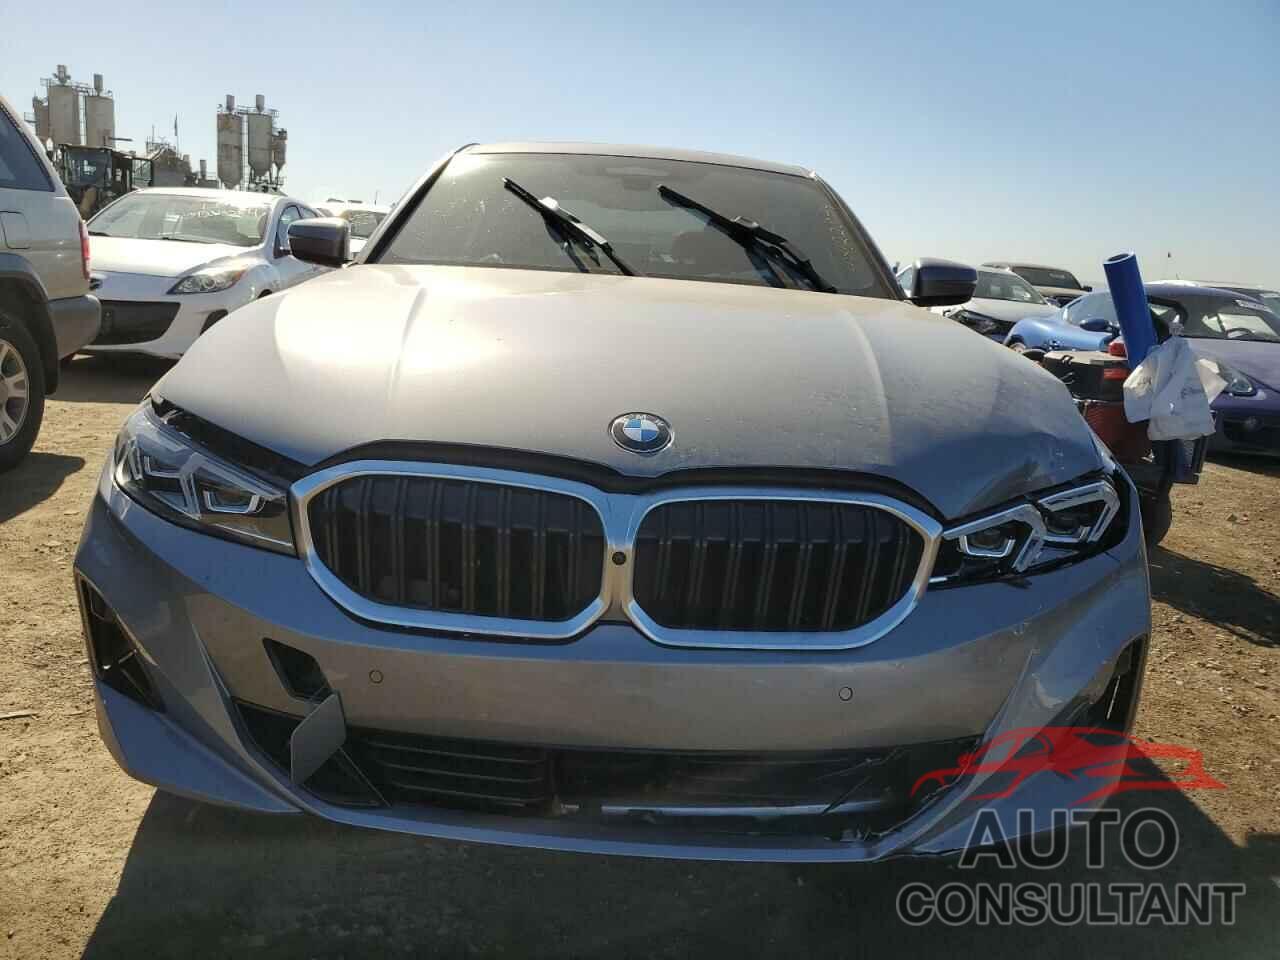 BMW 3 SERIES 2023 - 3MW69FF08P8D20772